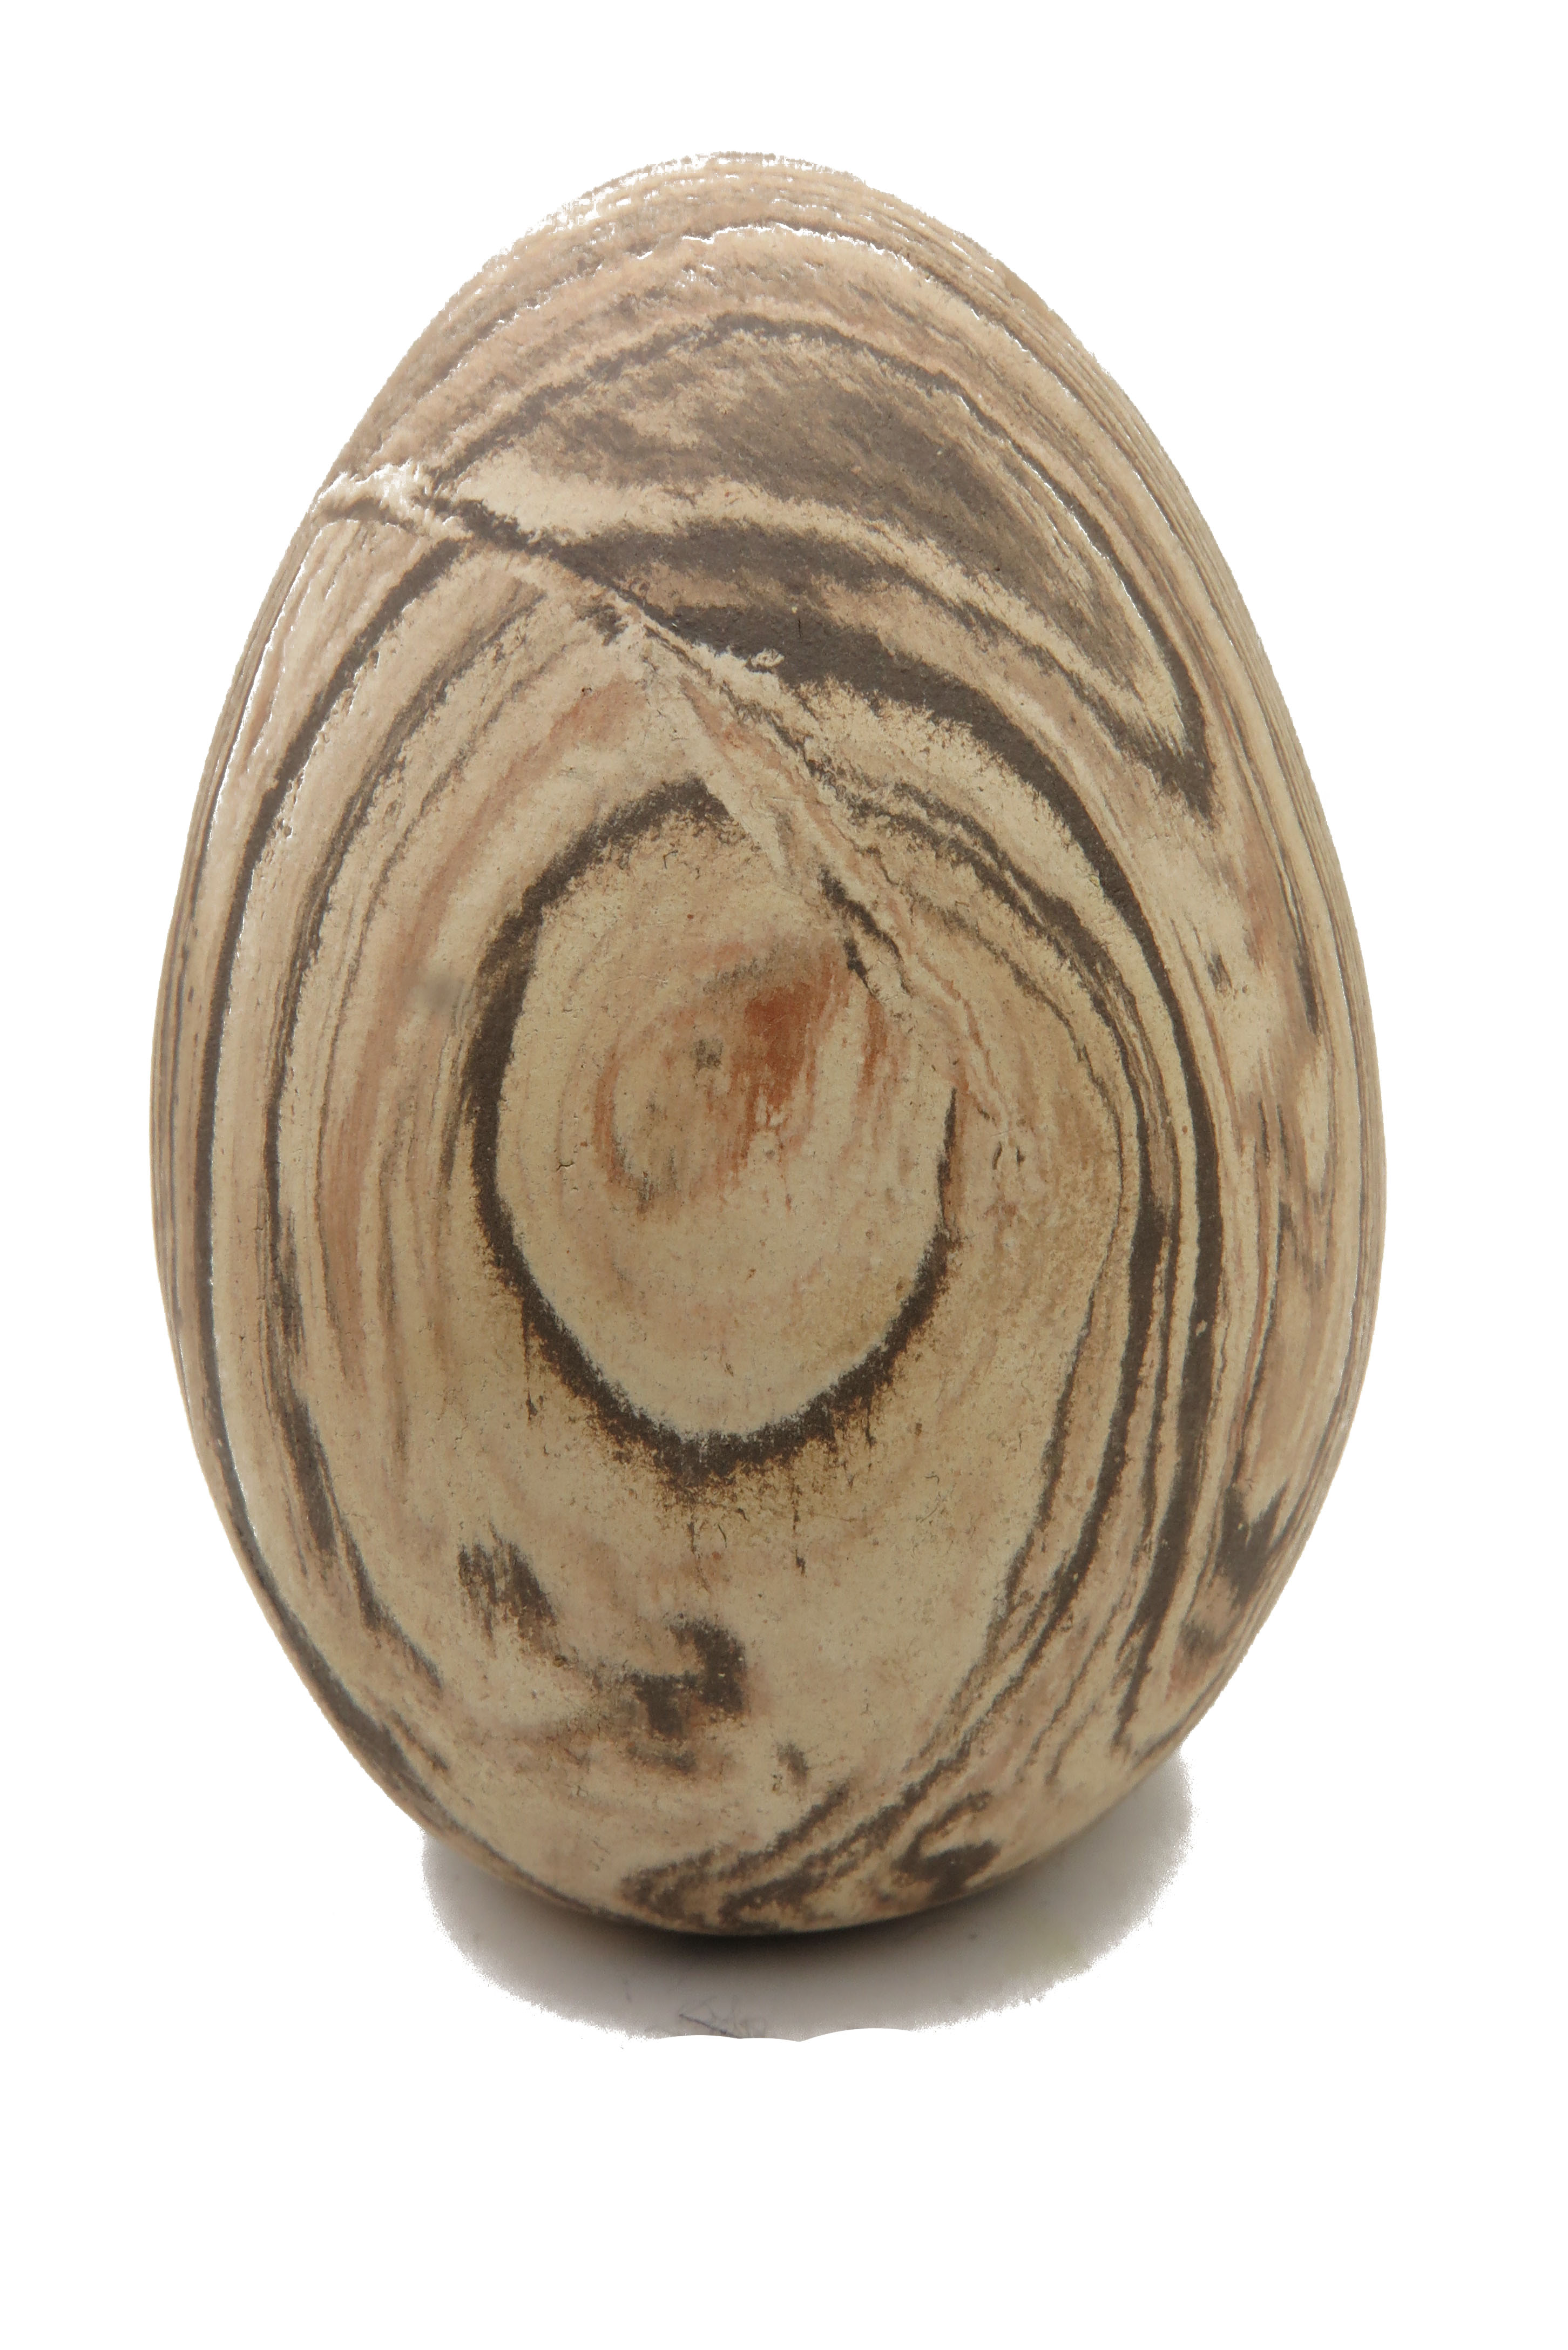  Eier wie aus Stein gehauen/ M 14 cm